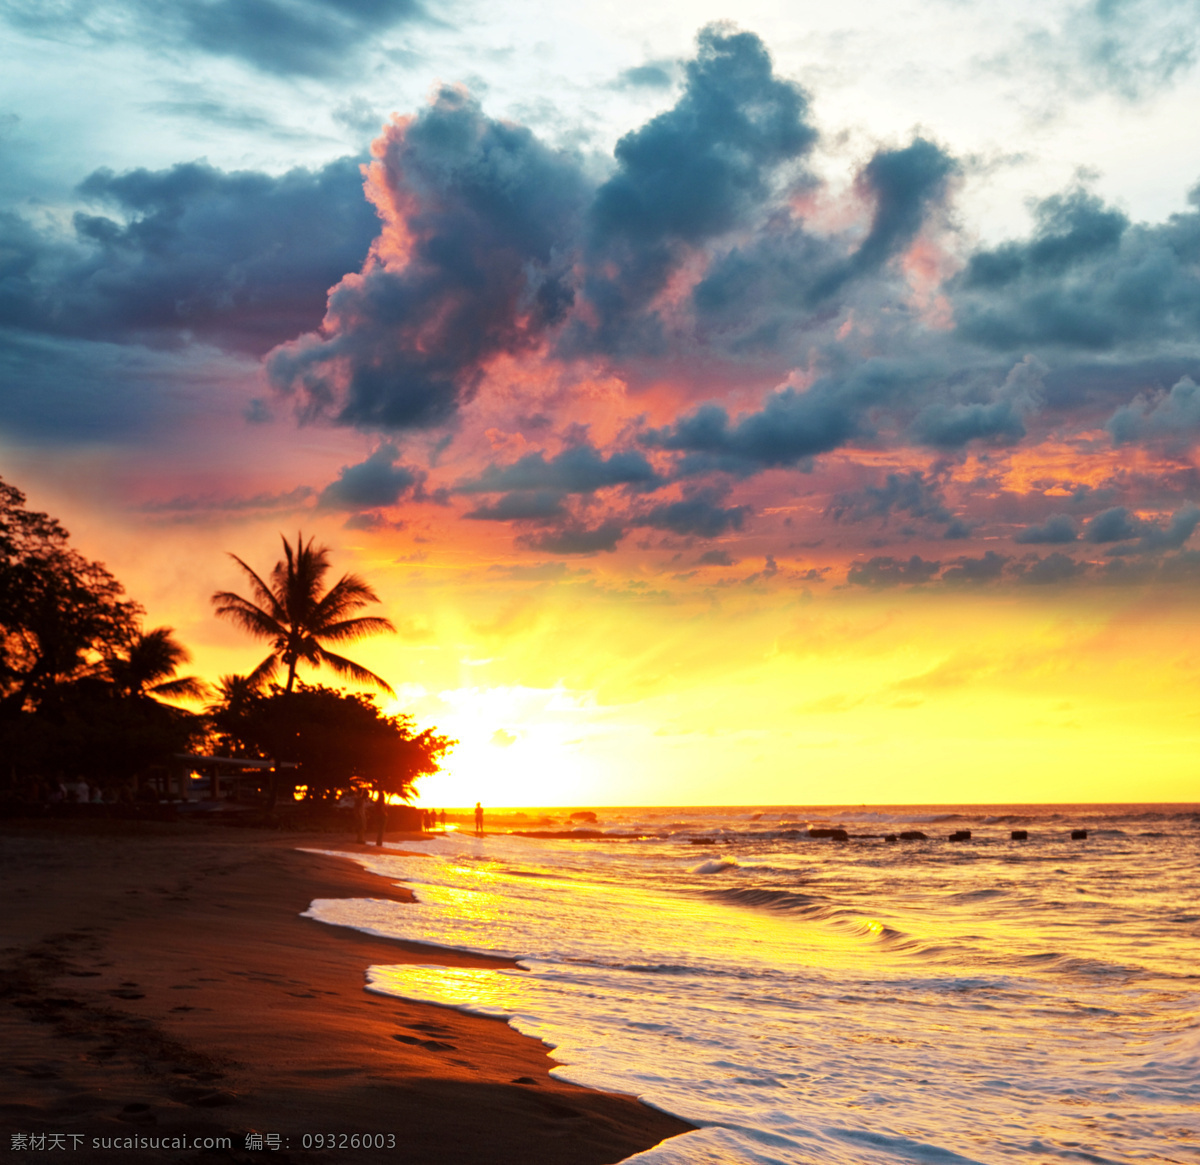 海边 日出 椰子树 海浪 大海 天空 风景图片 海洋海边 天空云彩 自然景观 黄色